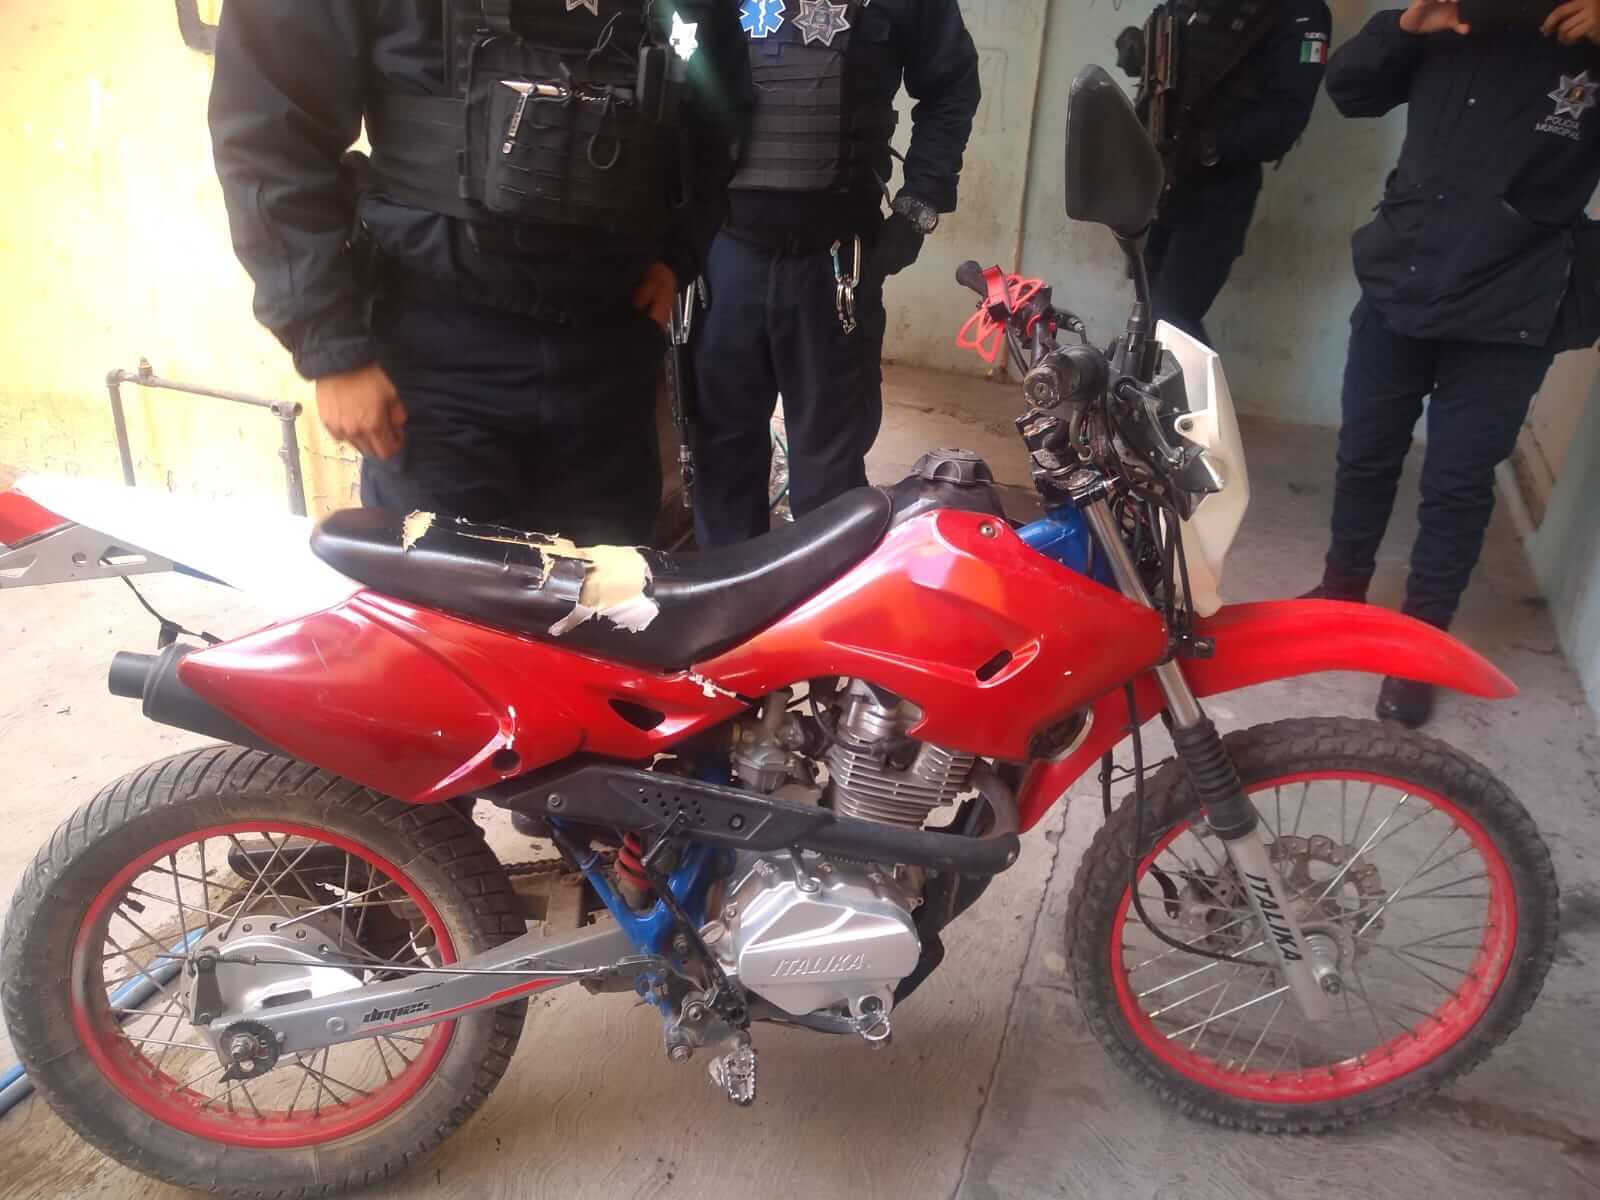 Elementos adscritos a la DGSPM de Soledad aseguraron una motocicleta en estado de abandono en la colonia Rancho Pavón